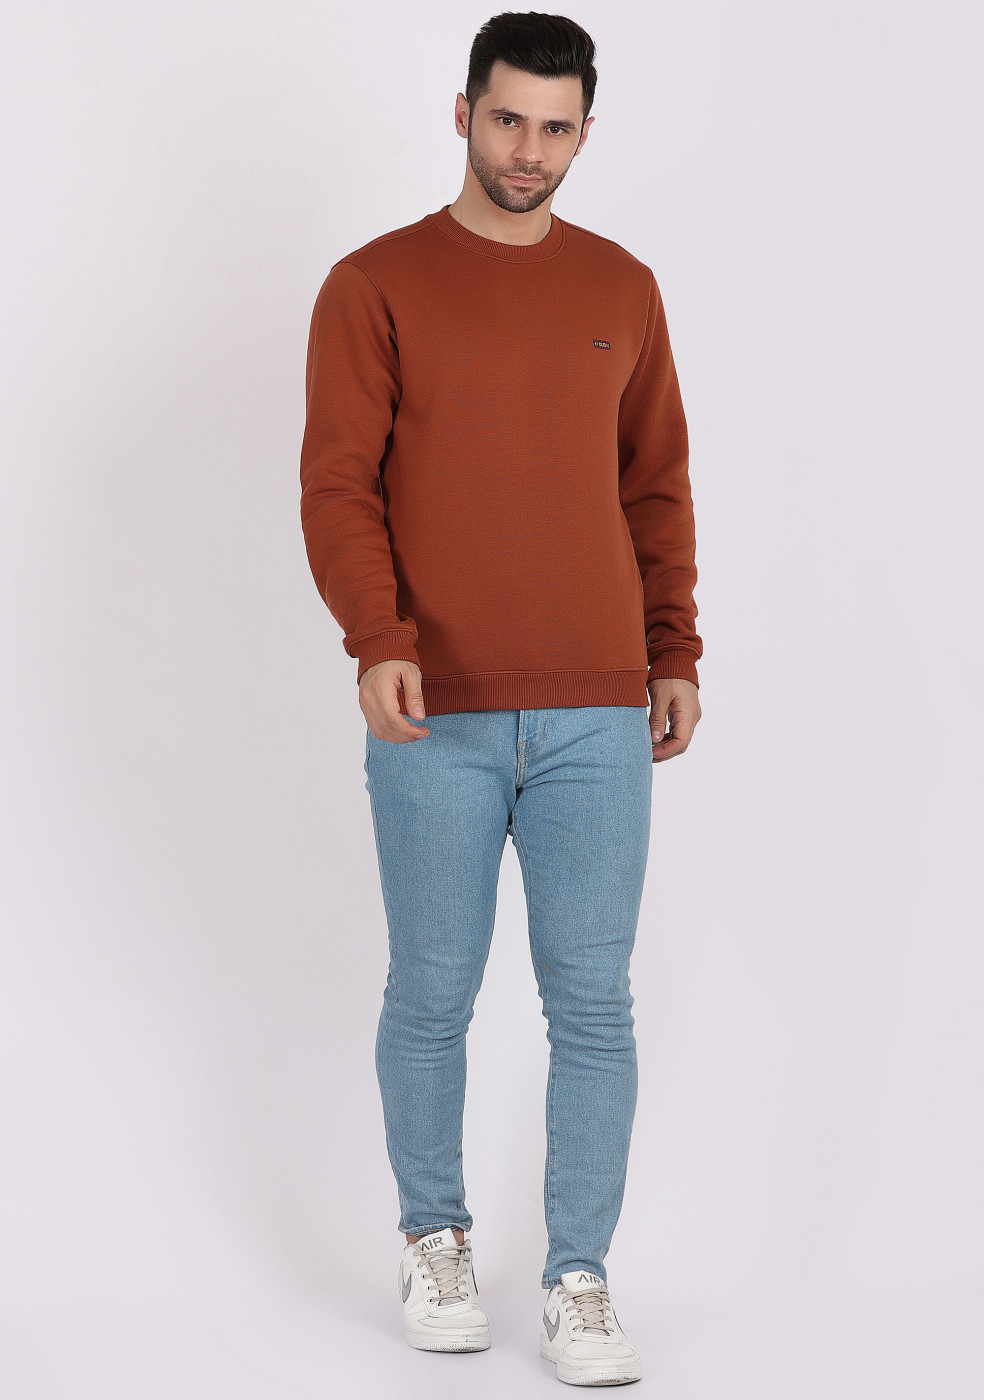 HUKH Rust Color Sweatshirt For Men